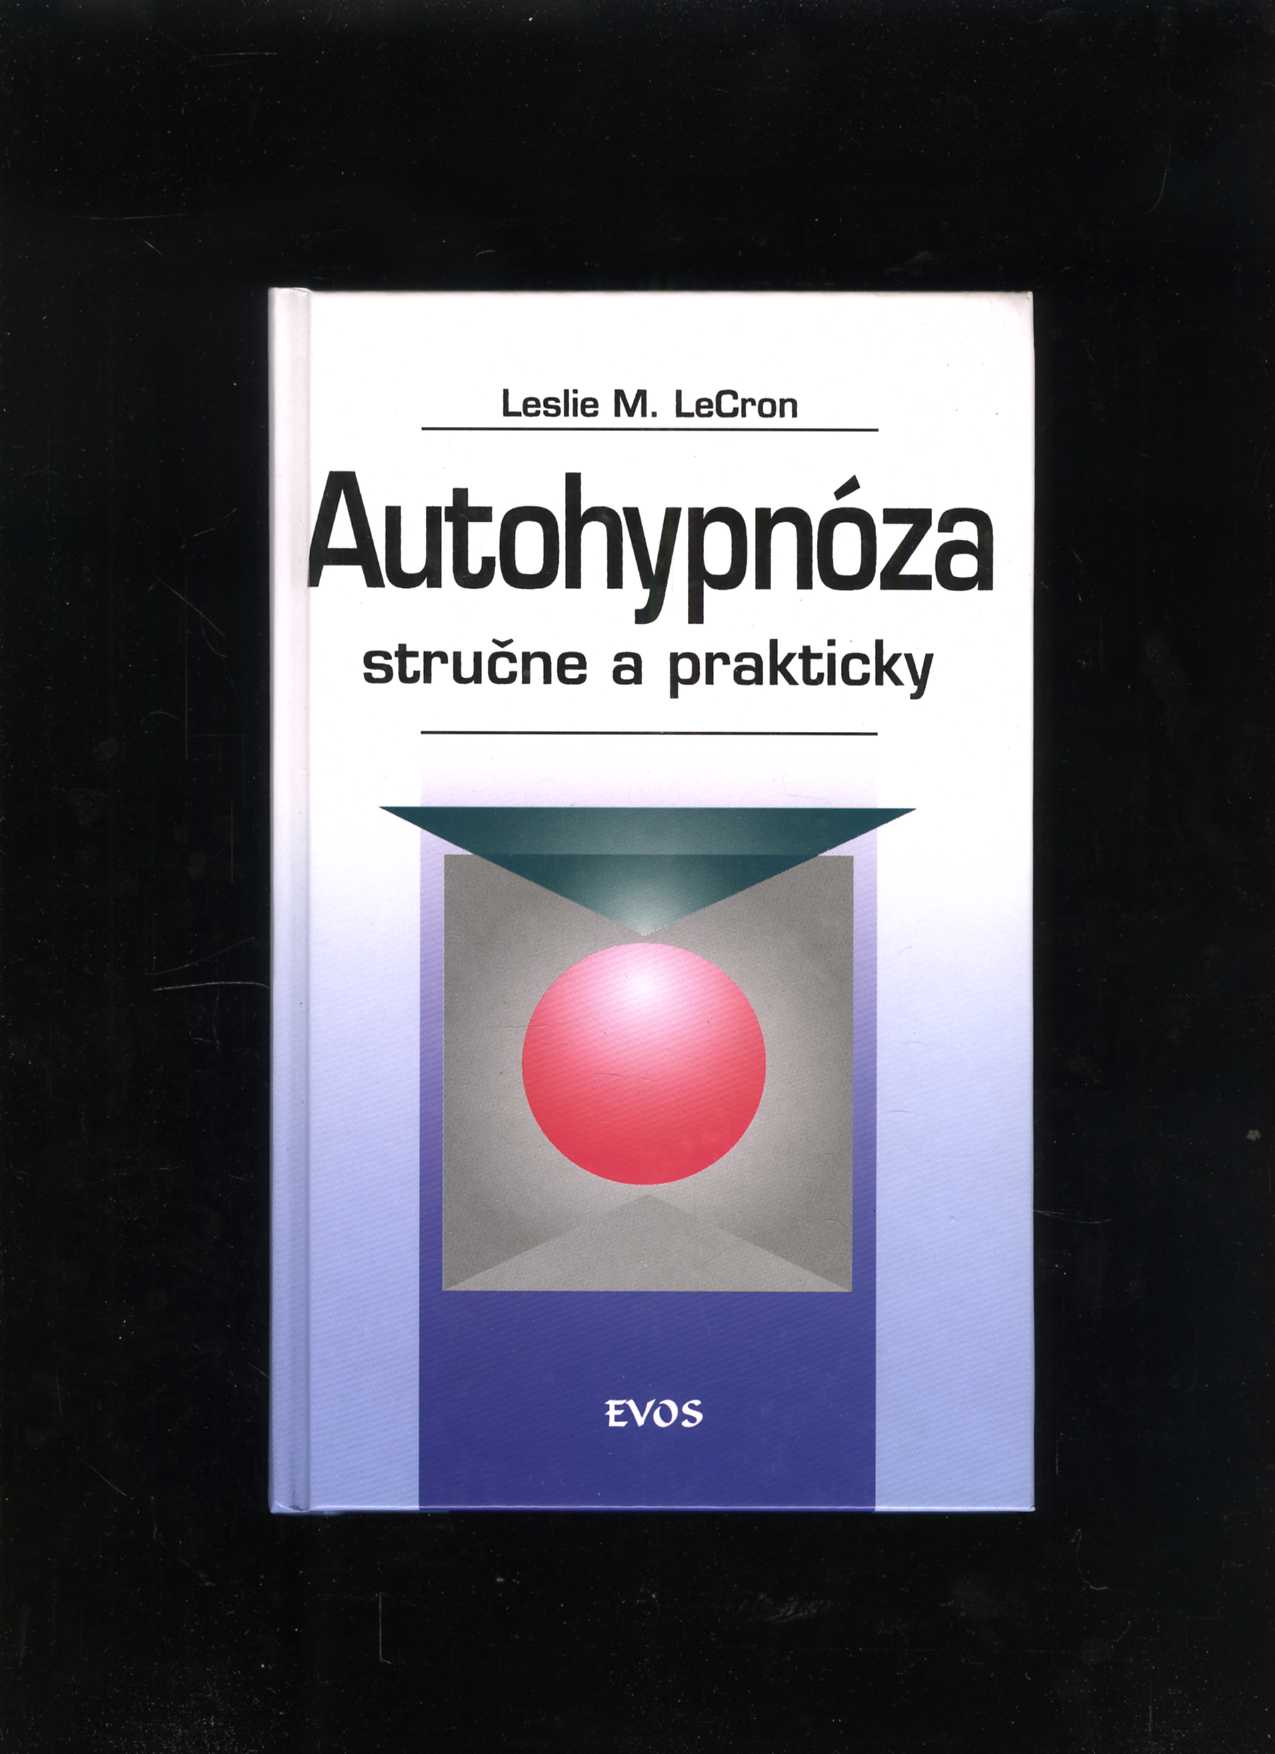 Autohypnóza stručne a prakticky (Leslie M. LeCron)